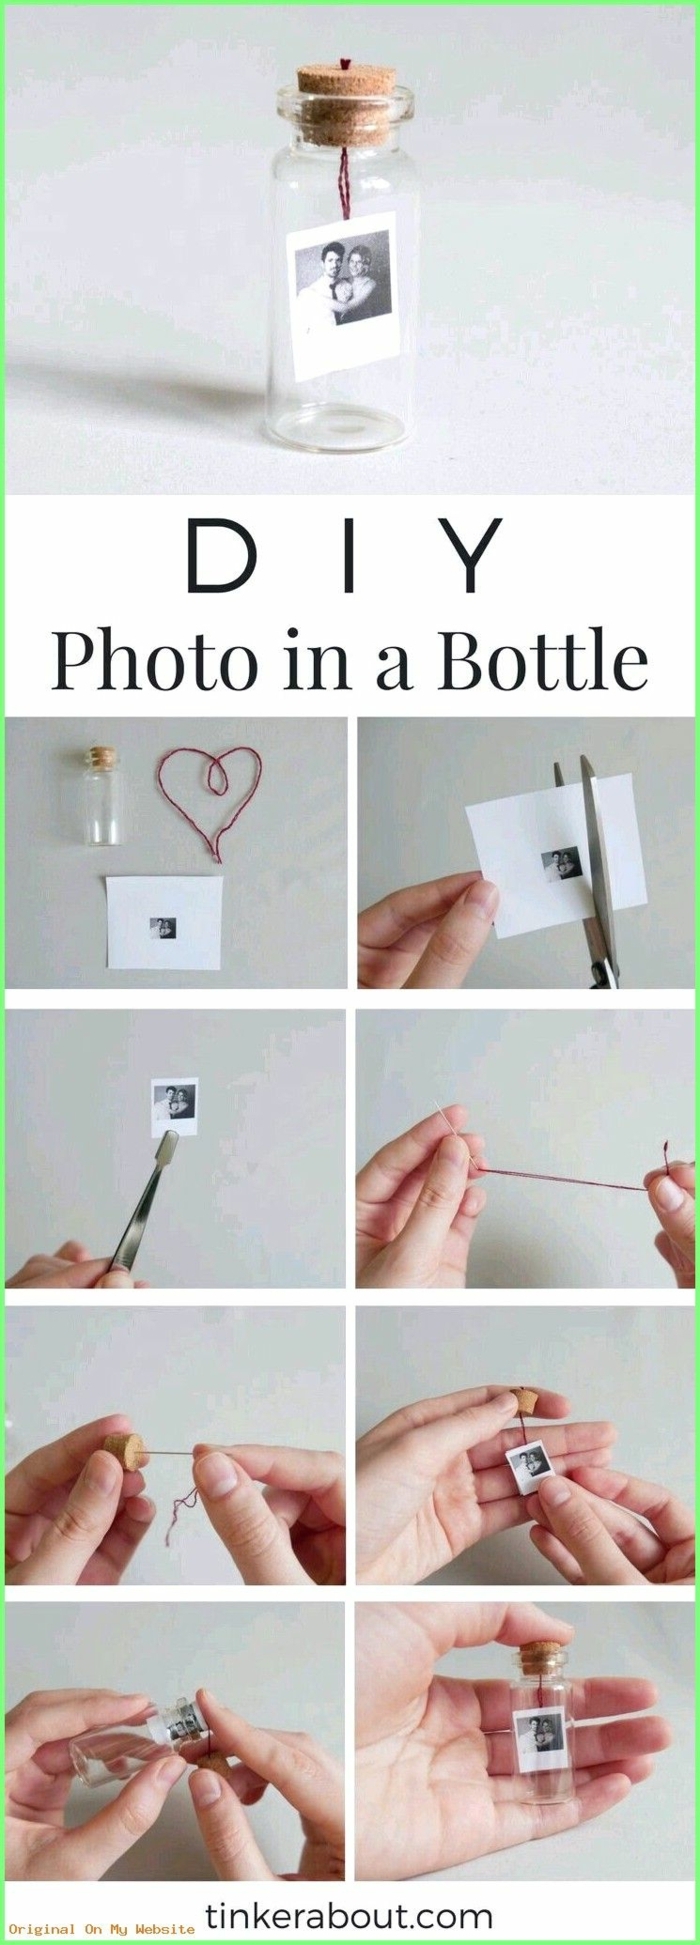 ausgefallene Fotogeschenke, DIY Anleitung für kleines Foto in kleiner Flasche, Hand schneidet kleines Foto und hängt es auf einem Draht